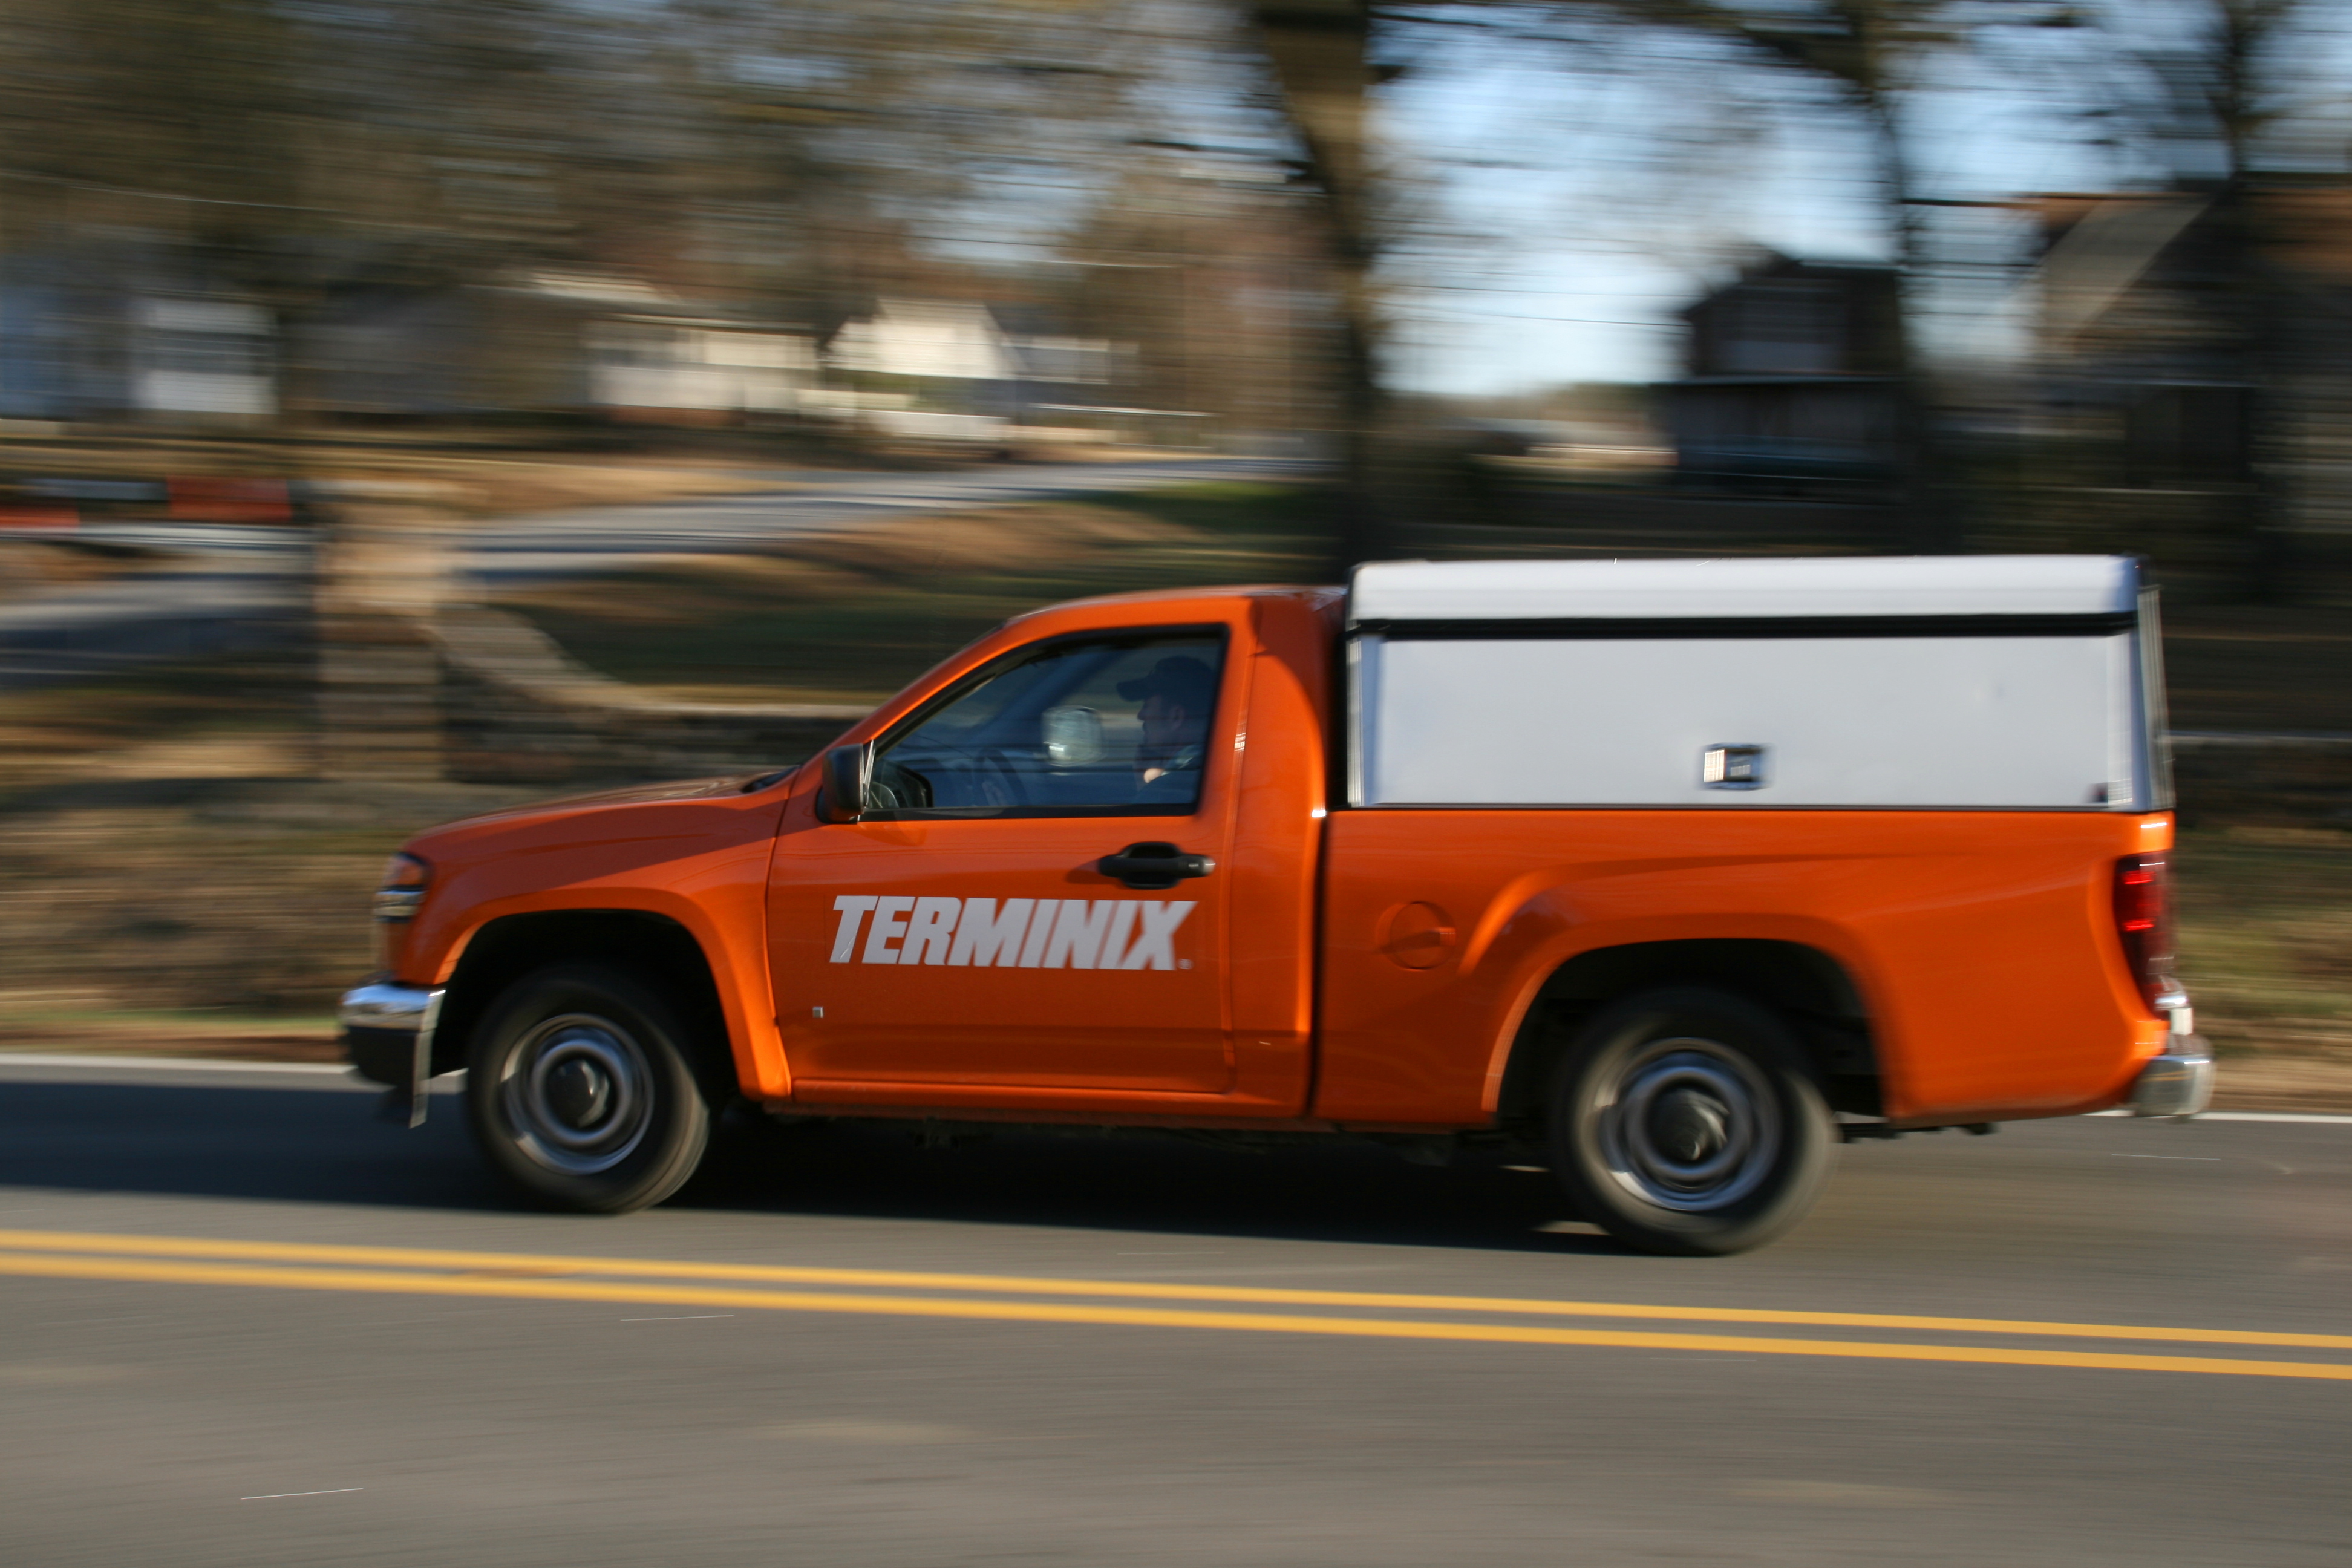 2009-02-20_Terminix_truck_on_Geer_St_in_Durham